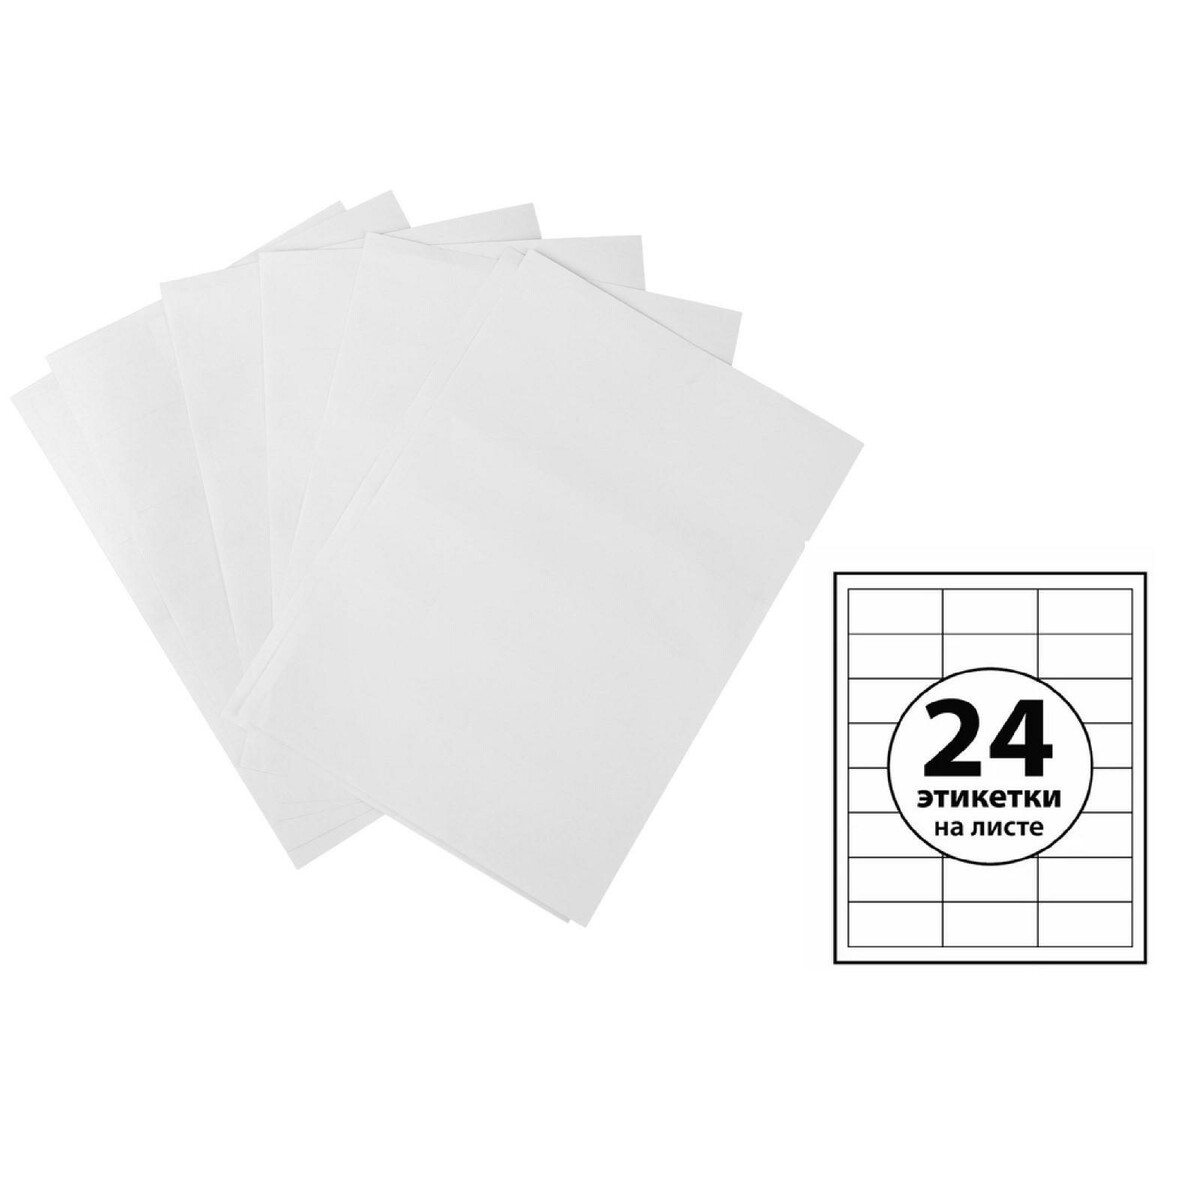 Этикетки а4 самоклеящиеся 100 листов, 80 г/м, на листе 24 этикетки, размер: 33,8 х 64,2 мм, глянцевые, белые merimeri значки глянцевые пираты 3 шт